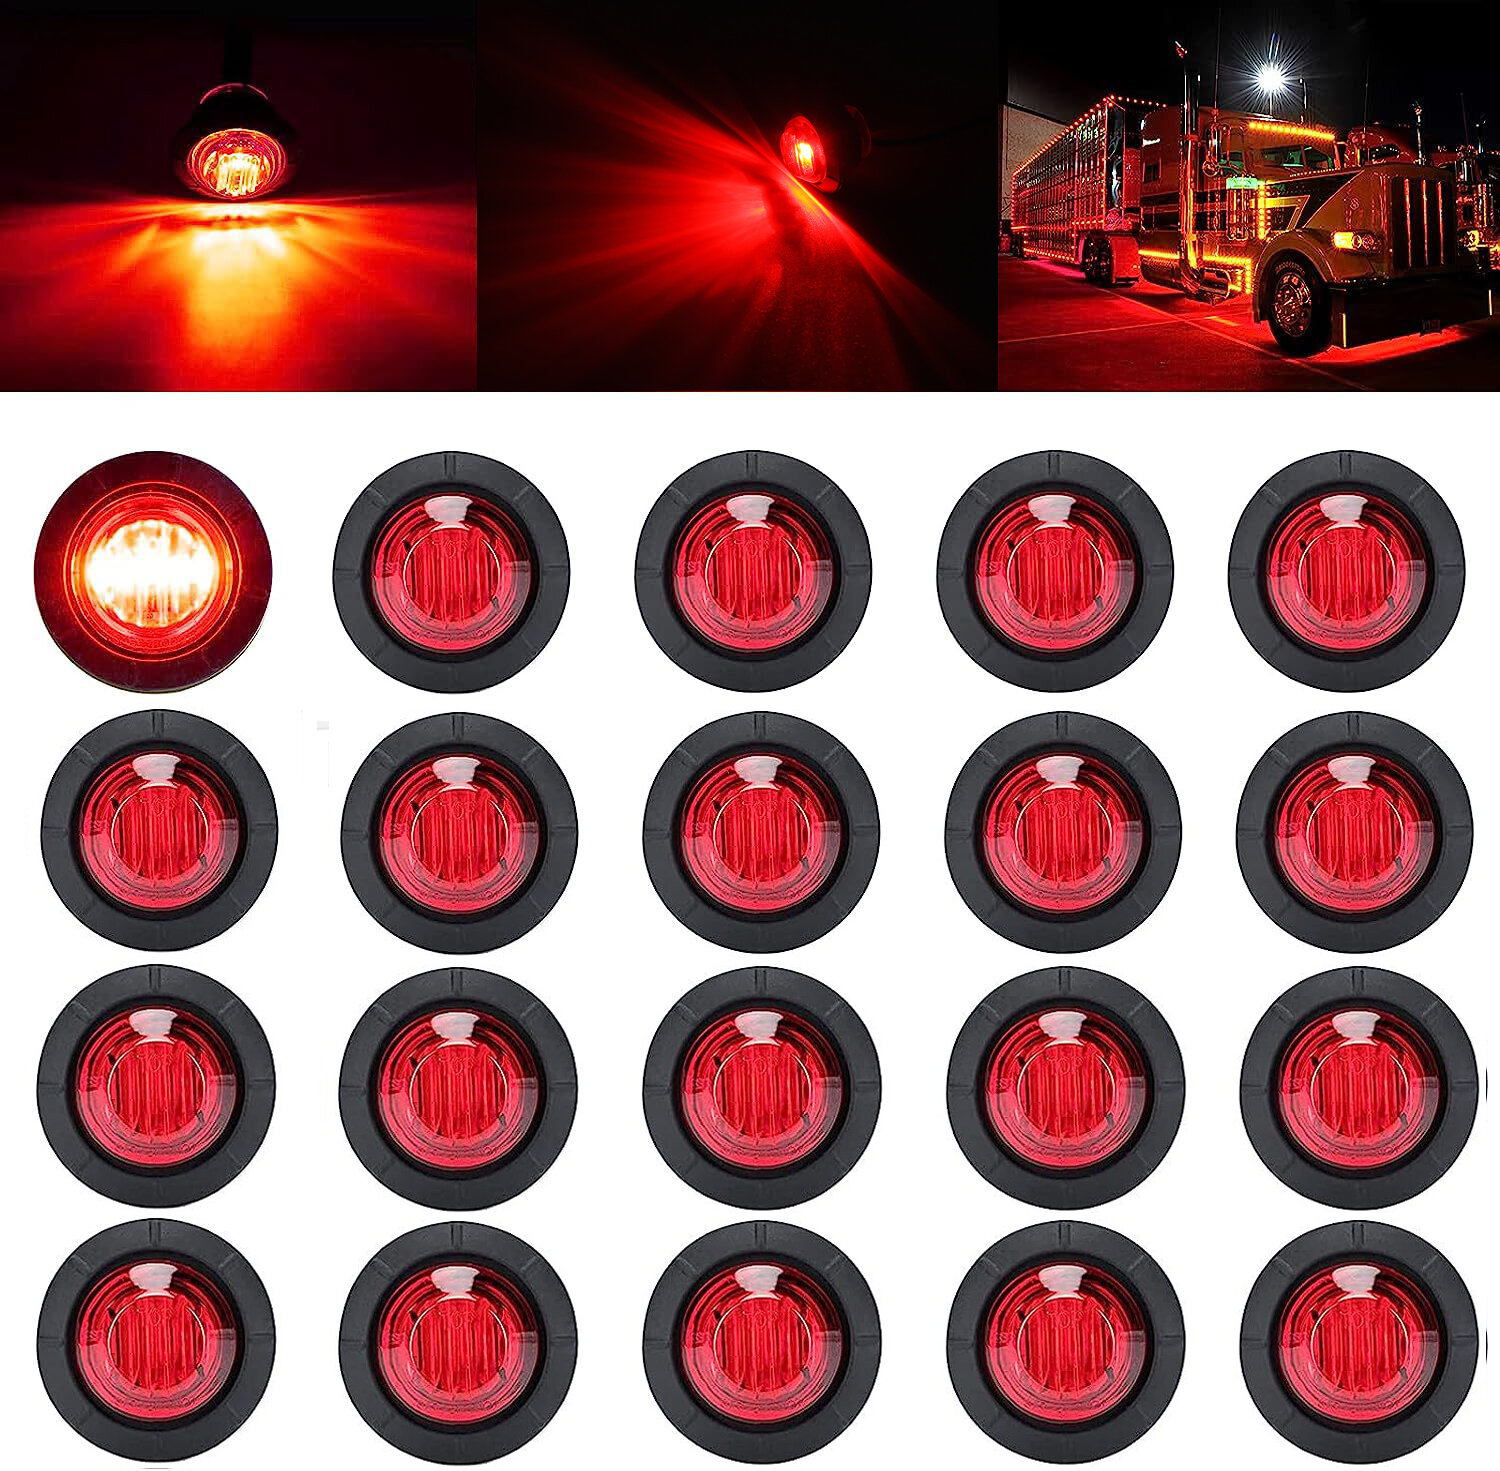 

20PCS 12V LED Side Marker Light Indicator Lamp for Car Truck Van Trailer BoatsSide Indicators Signal Lights